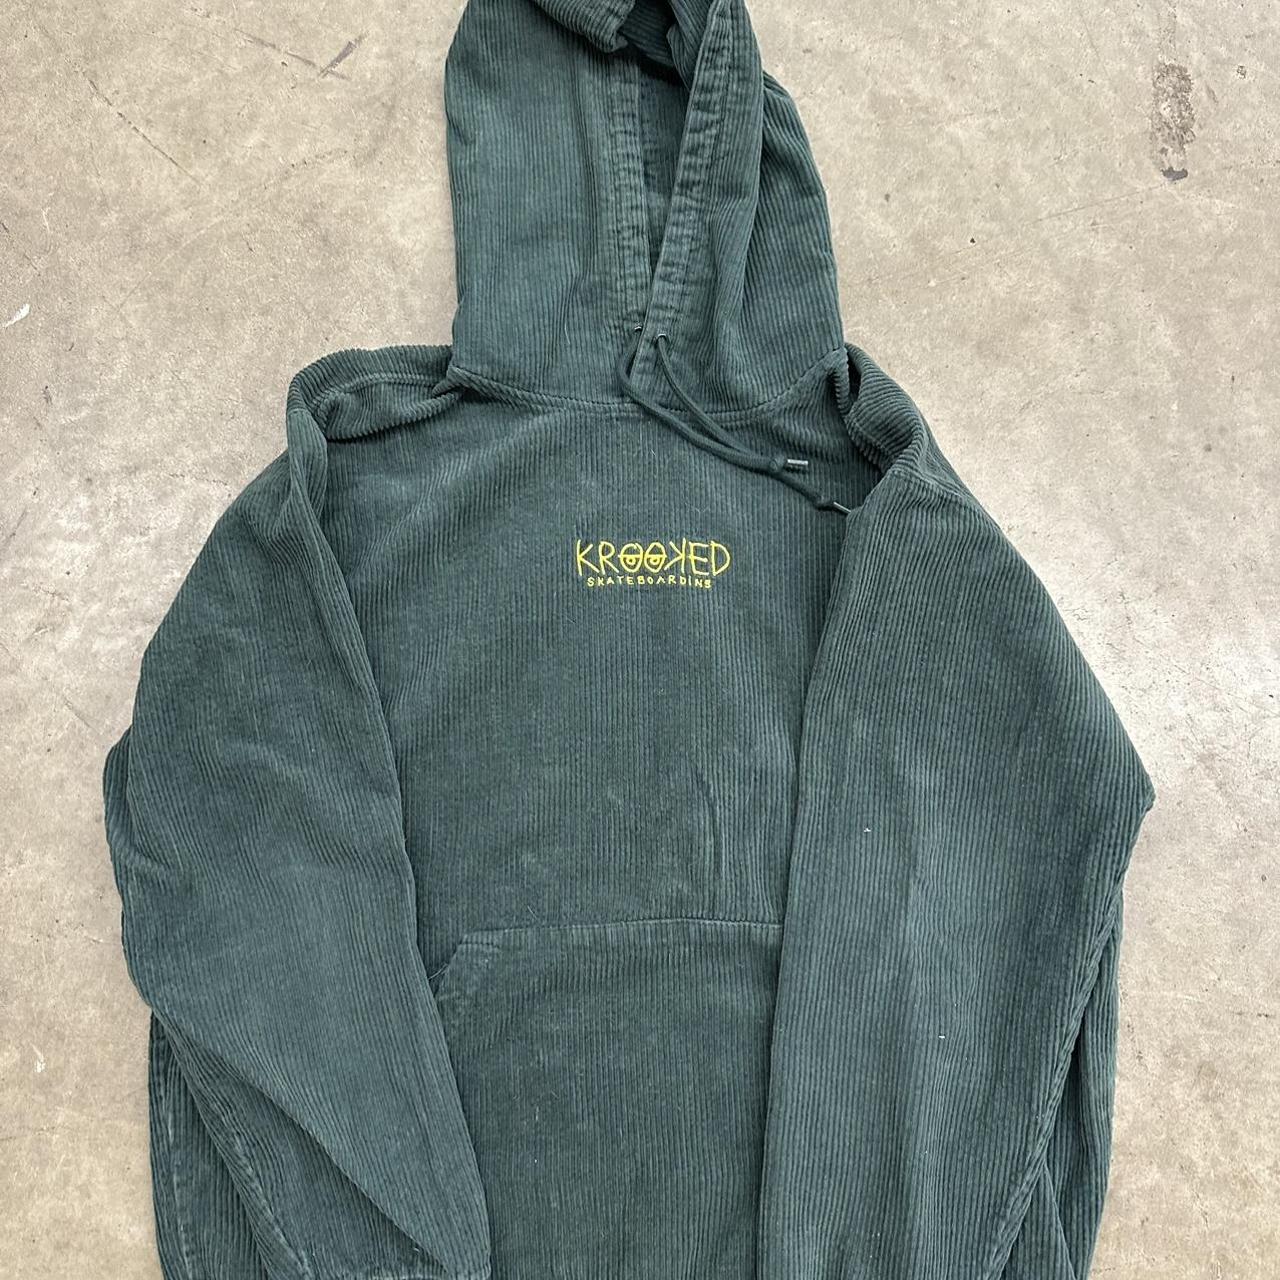 Green corduroy Krooked hoodie - Depop